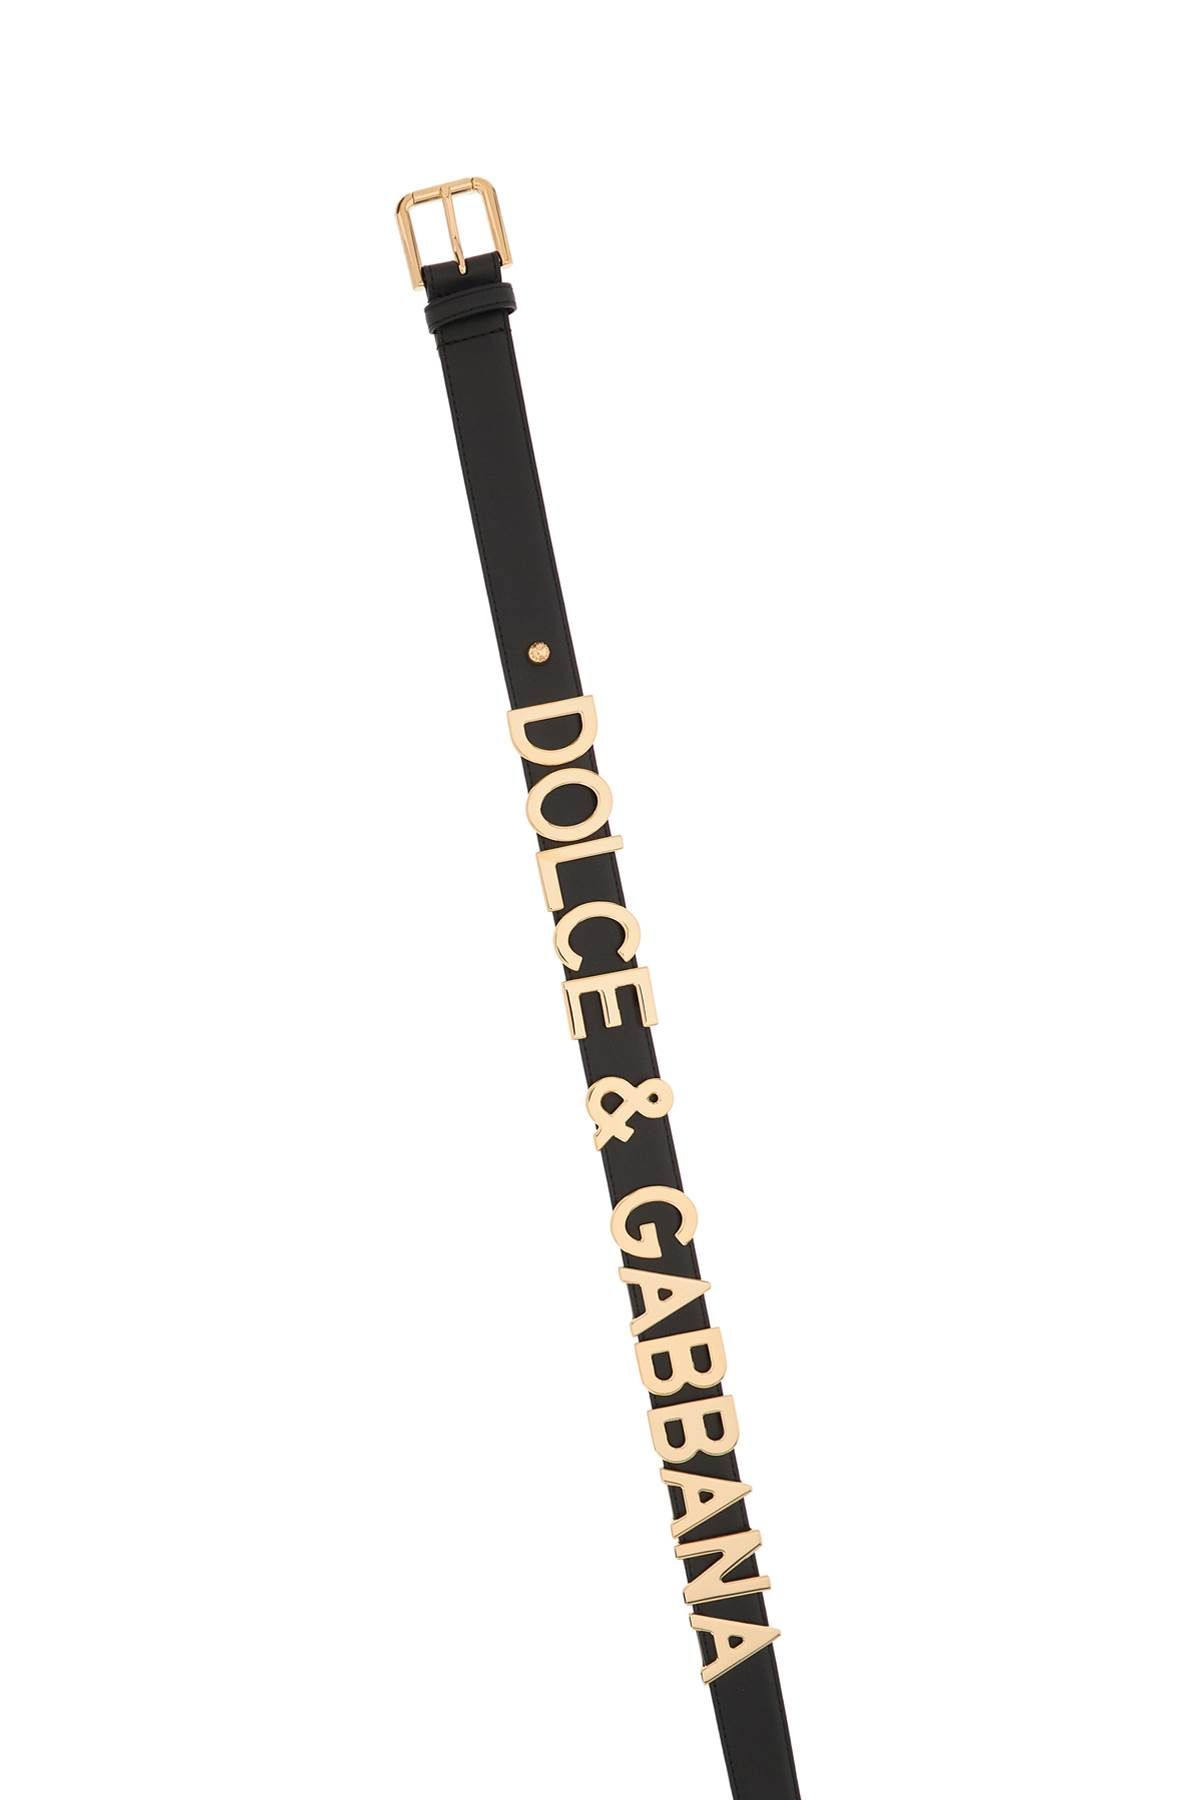 Shop Dolce & Gabbana Lettering Logo Leather Belt In Black,gold